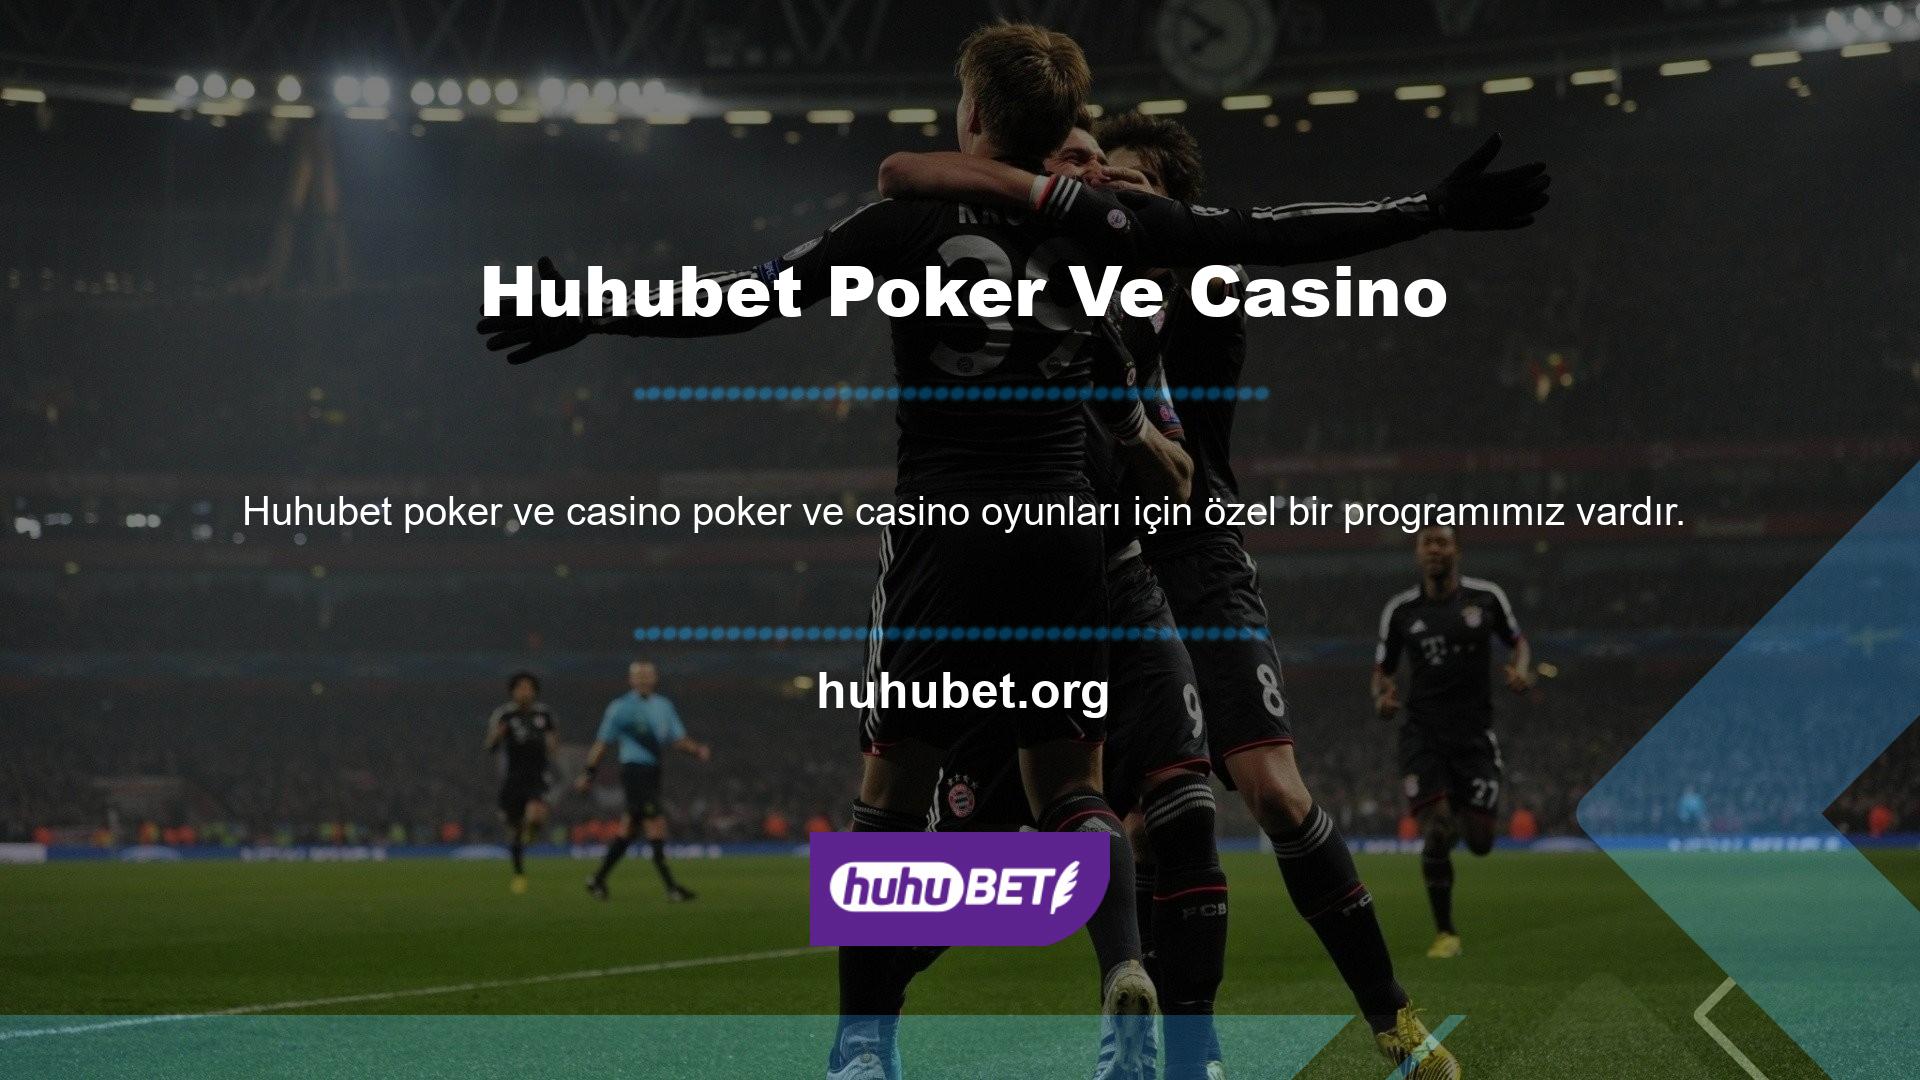 Yani indirme ve kurulum seçeneklerinize göre Huhubet Casino seçeneklerini değerlendirebilirsiniz